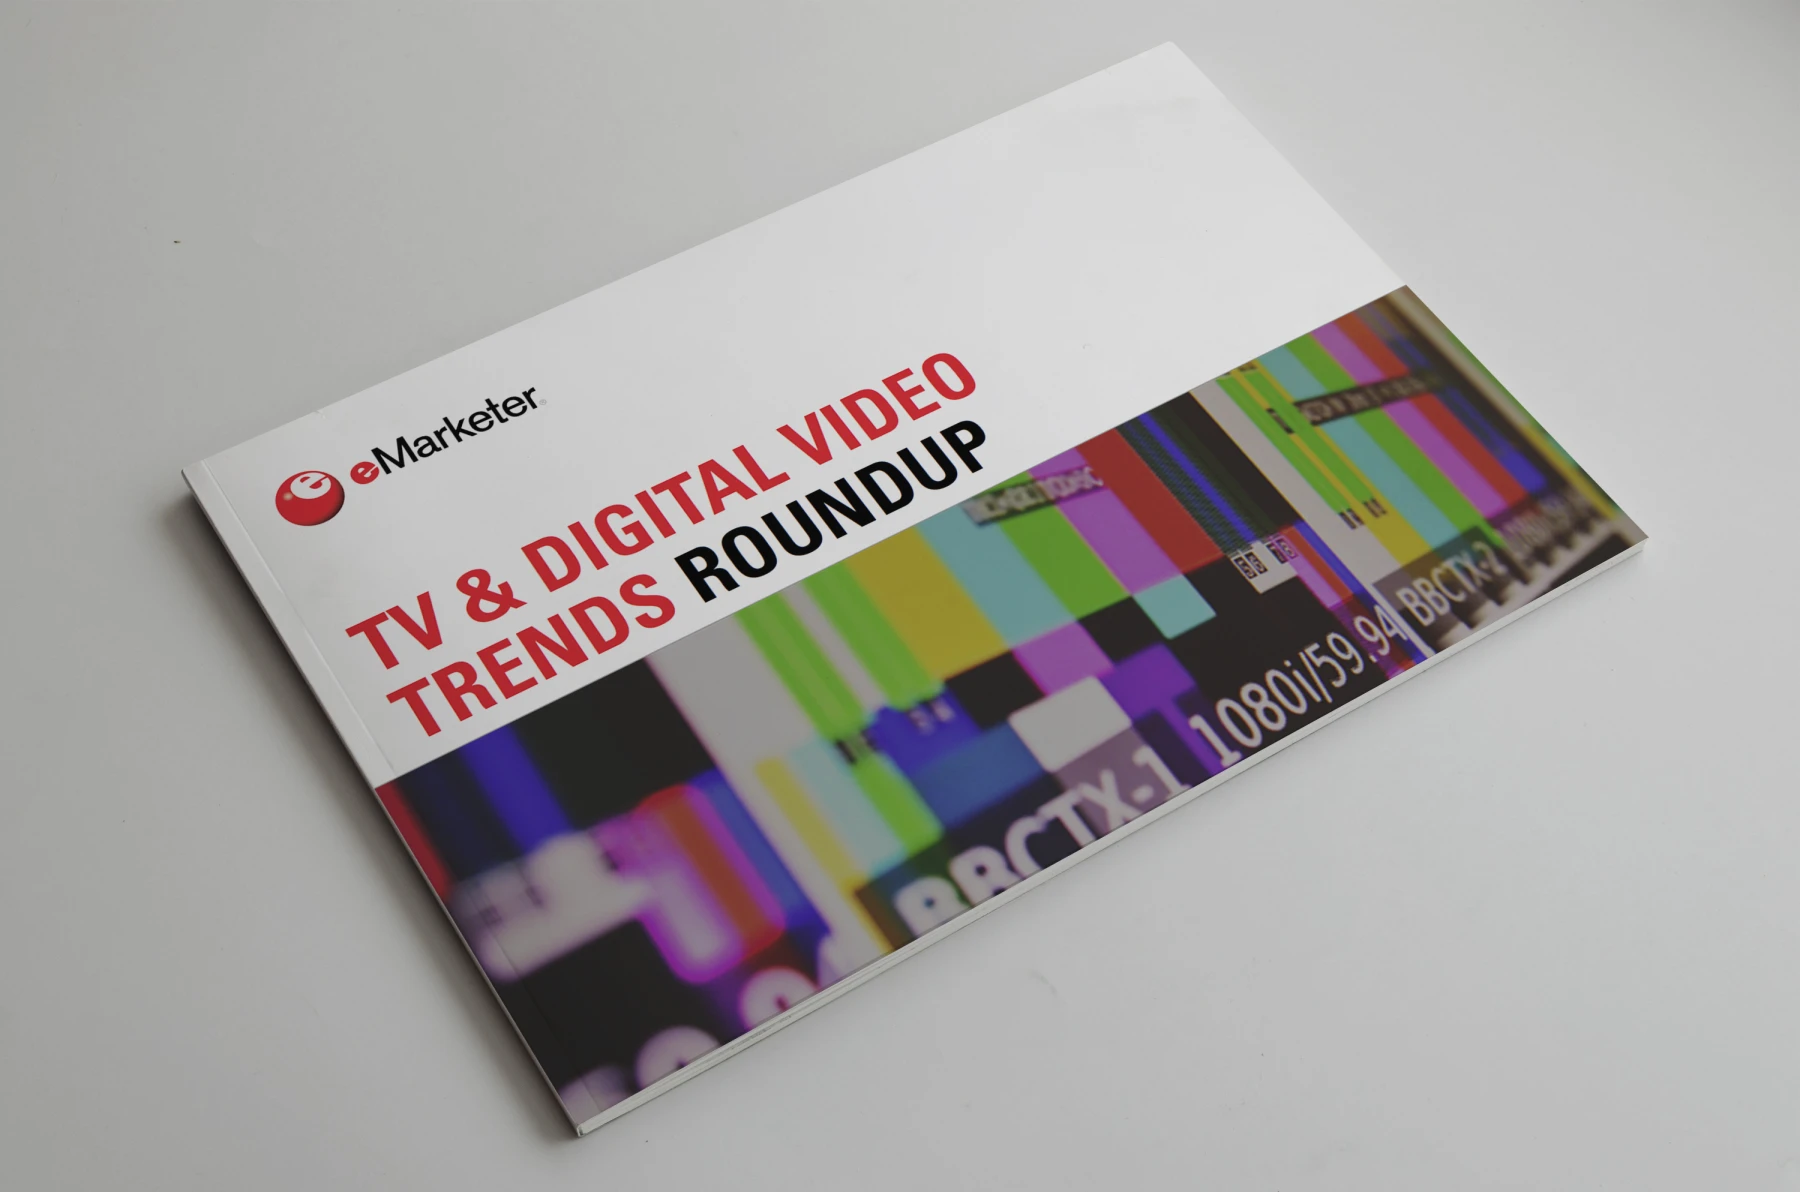 emarketer tv digital video trends roundup